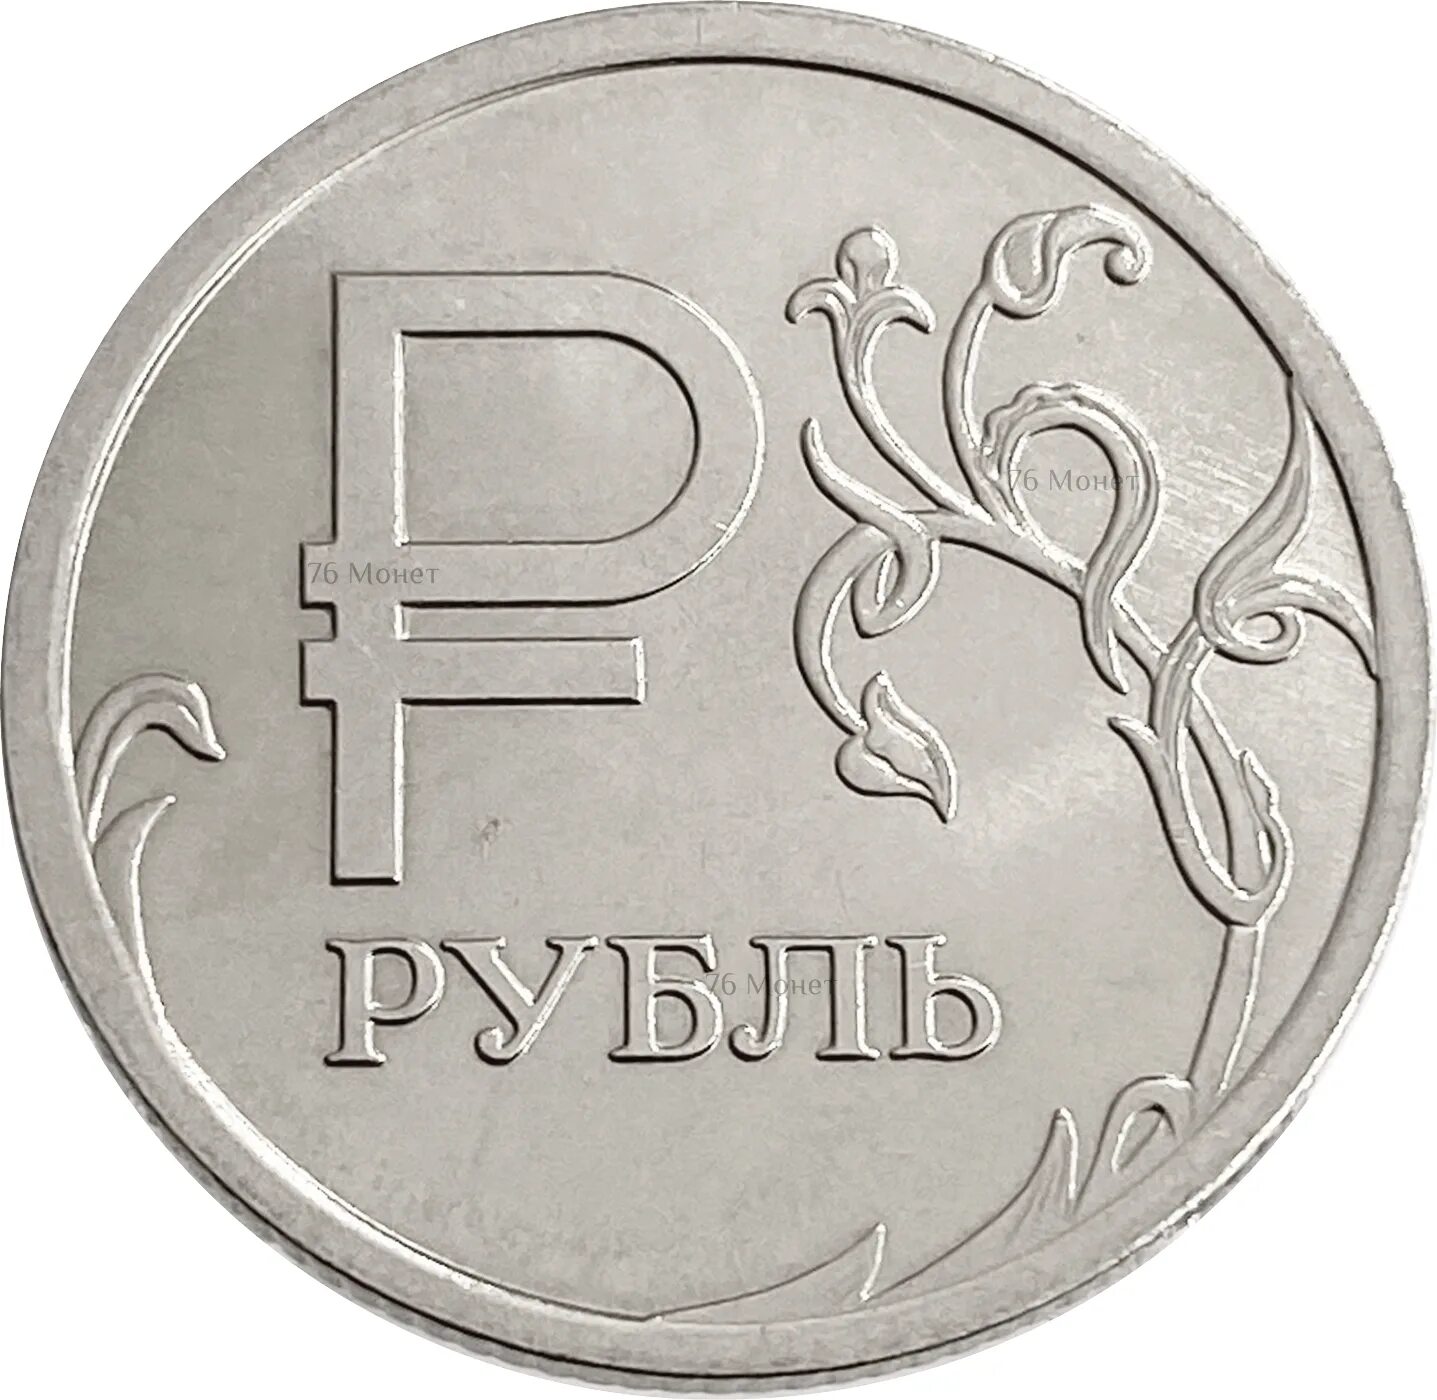 D he kz. Монета 1 рубль 2014. Монета 1рубль 2014 года с буквой р перевертыш. Графическое изображение рубля. Знак рубля.